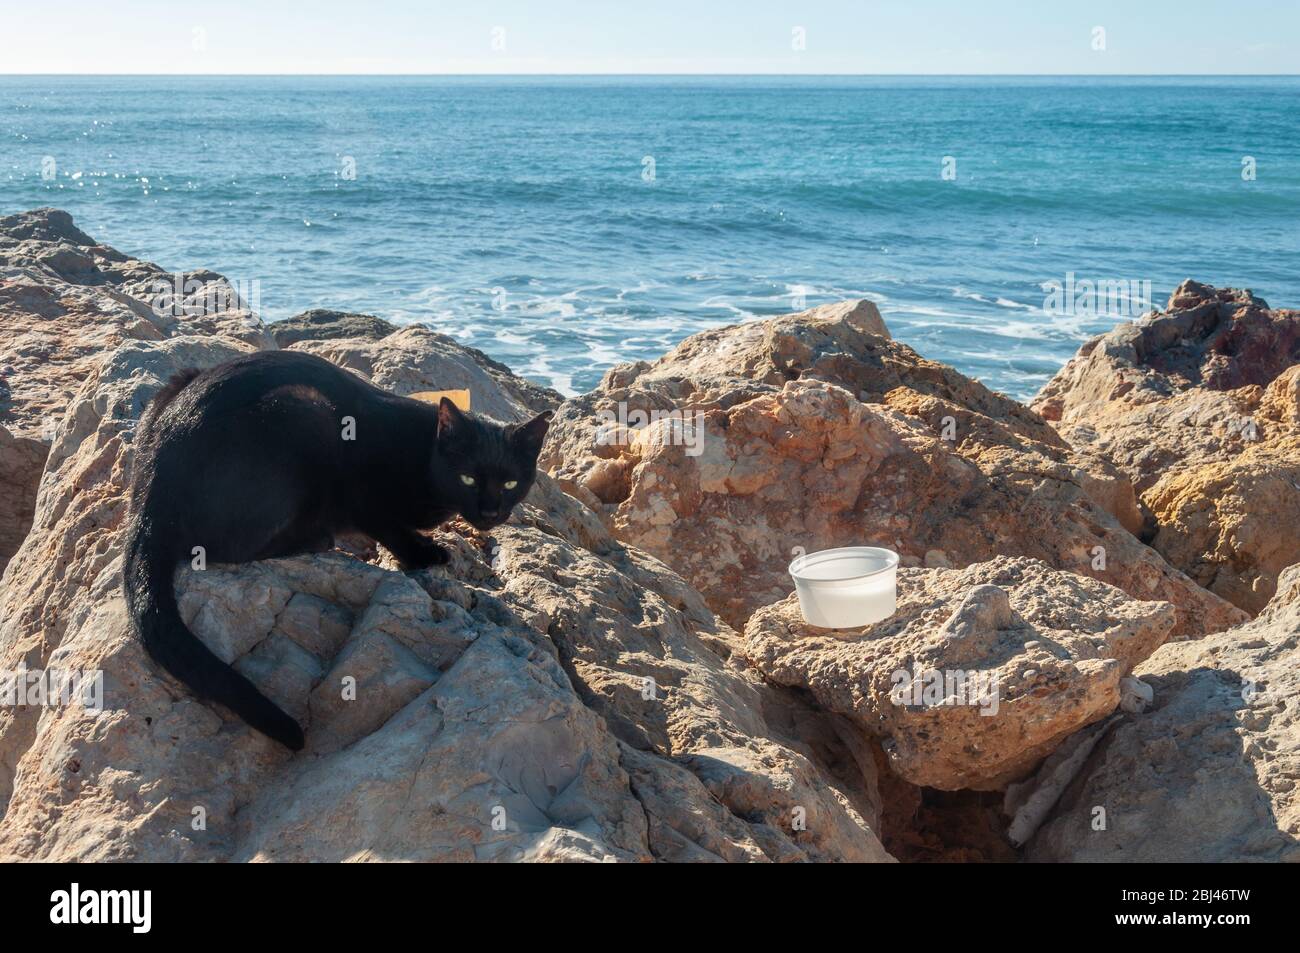 Chat noir sur les rochers de la côte méditerranéenne, avec un convoyeur d'une personne anonyme Banque D'Images